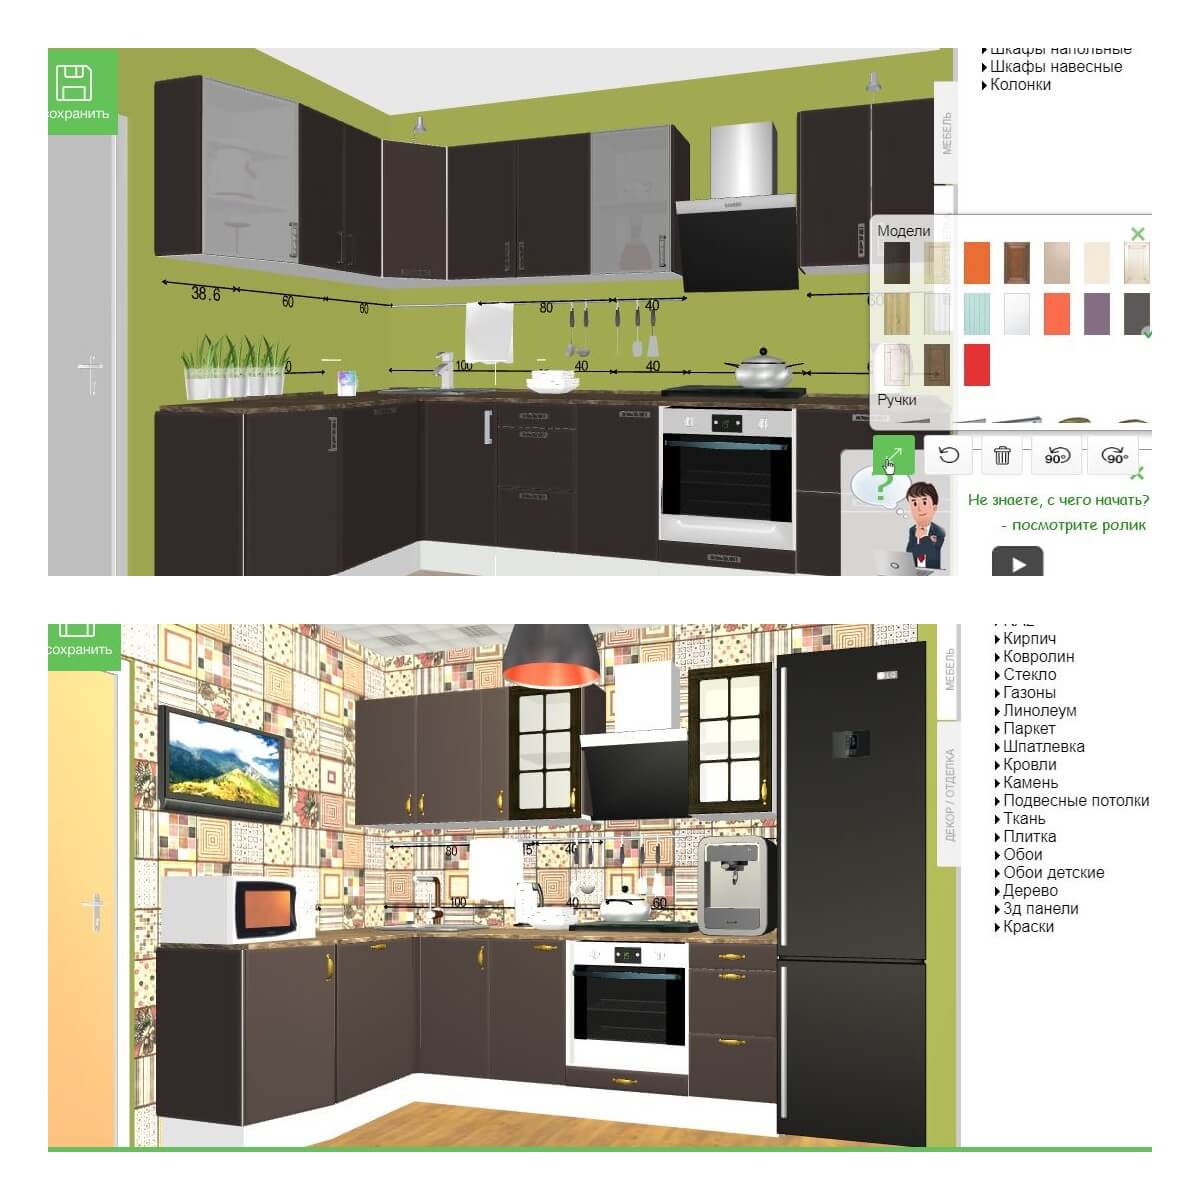 Кухни в леруа мерлен — обзор готового и модульного гарнитура 2022 года. каталог популярных новинок мебели по отзывам покупателей